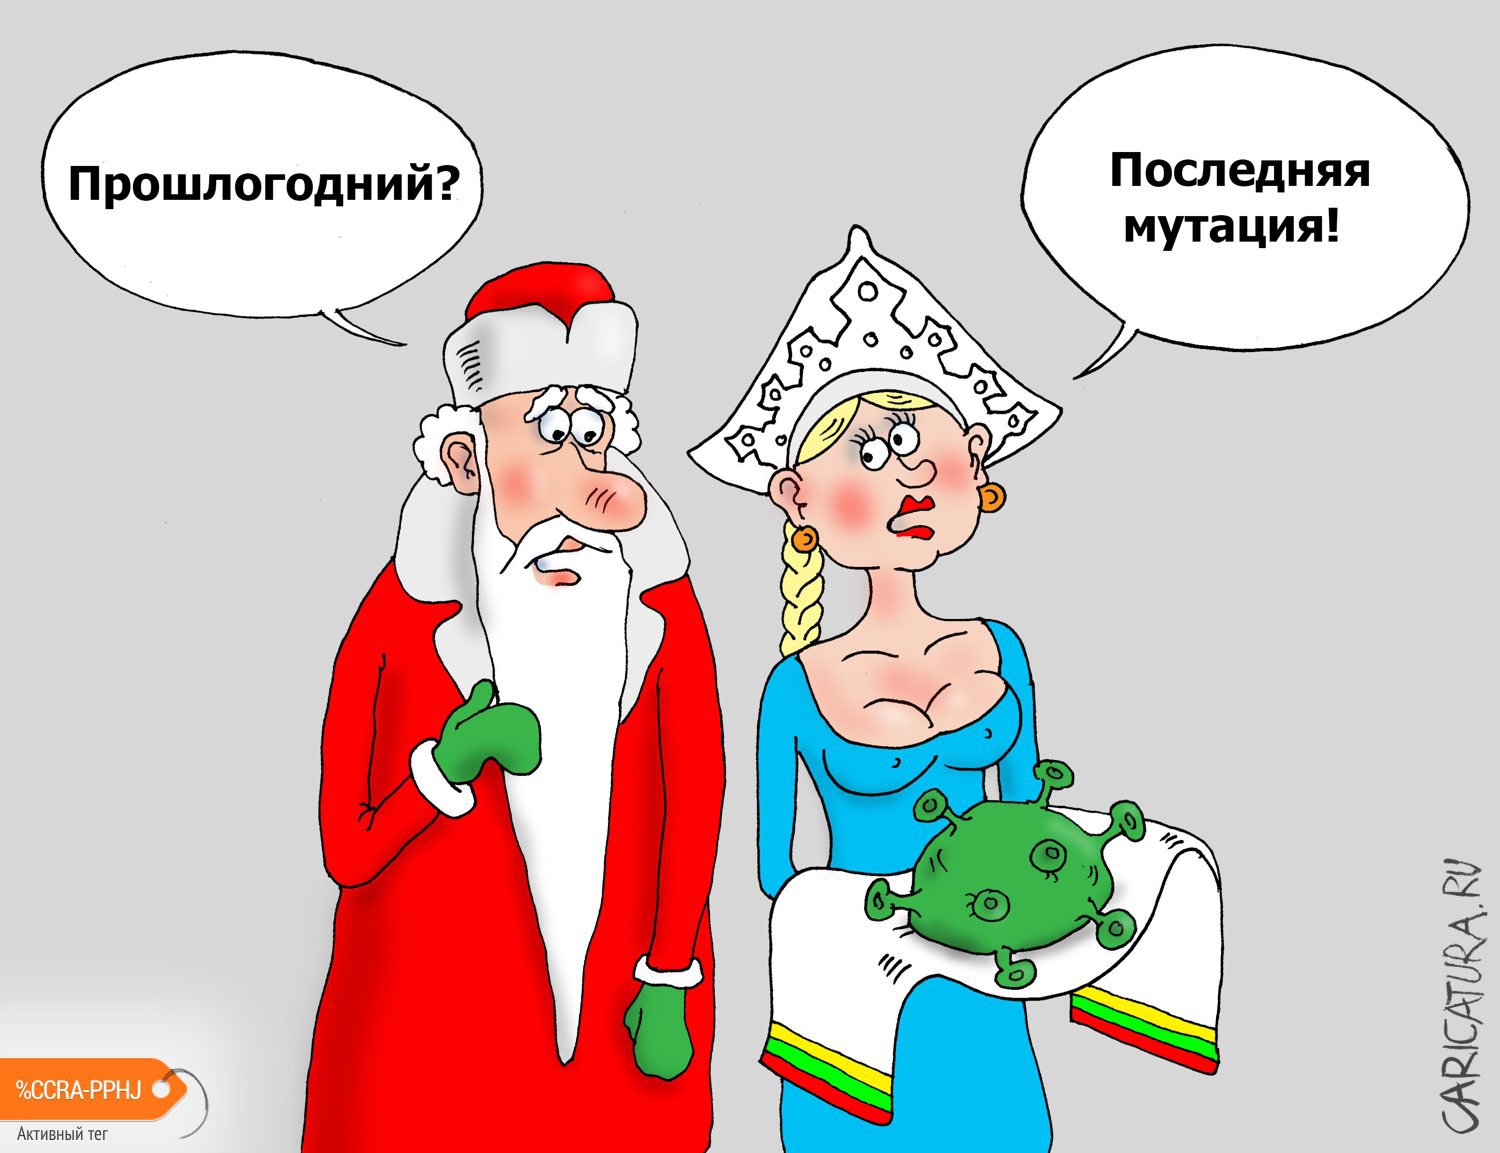 Карикатура "Сюрприз", Валерий Тарасенко